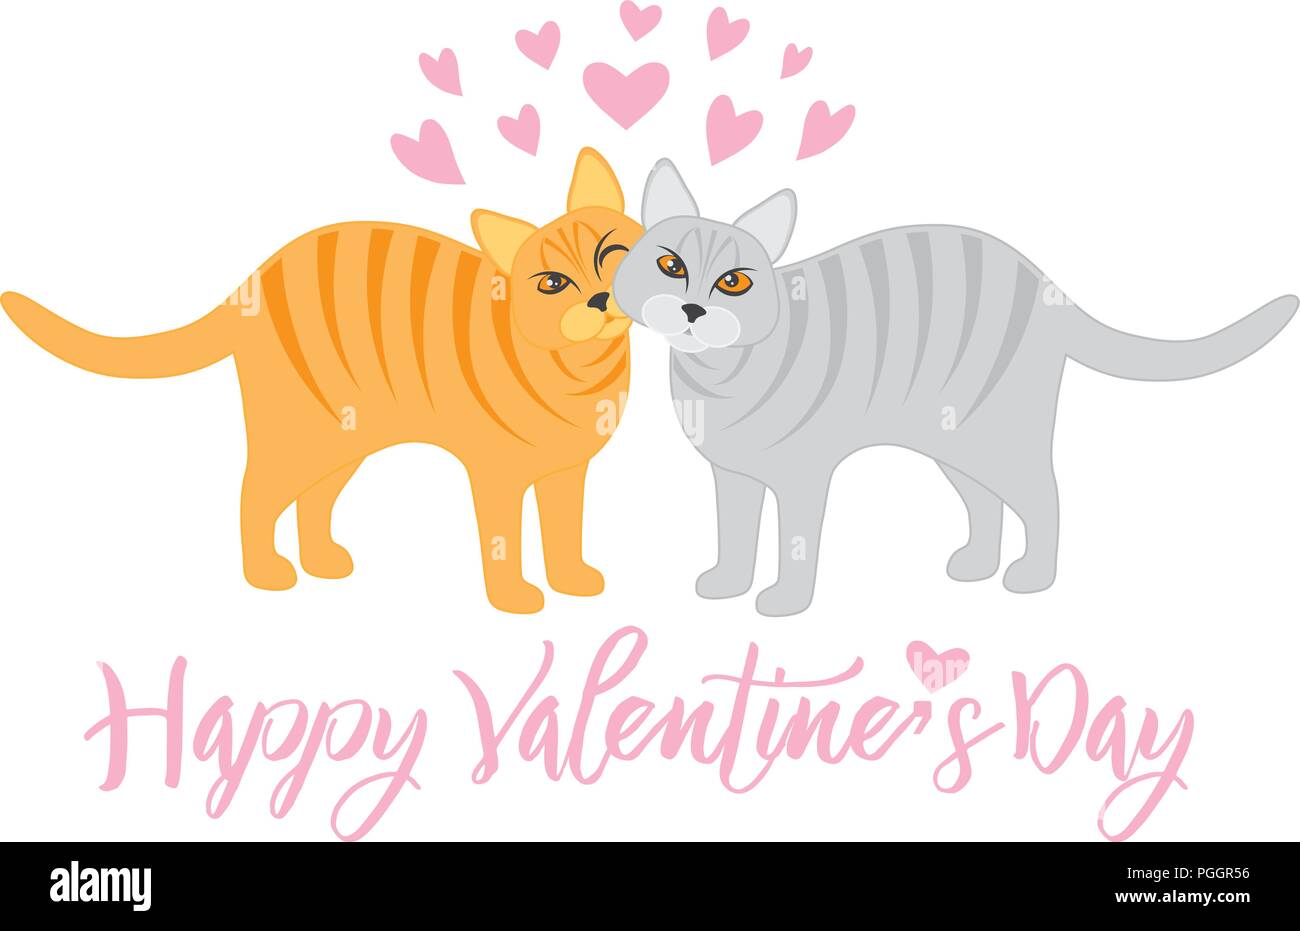 Coppia di Calico e Tabby Gatti Snuggling con Happy Valentines Day testo isolato su sfondo bianco illustrazione Illustrazione Vettoriale